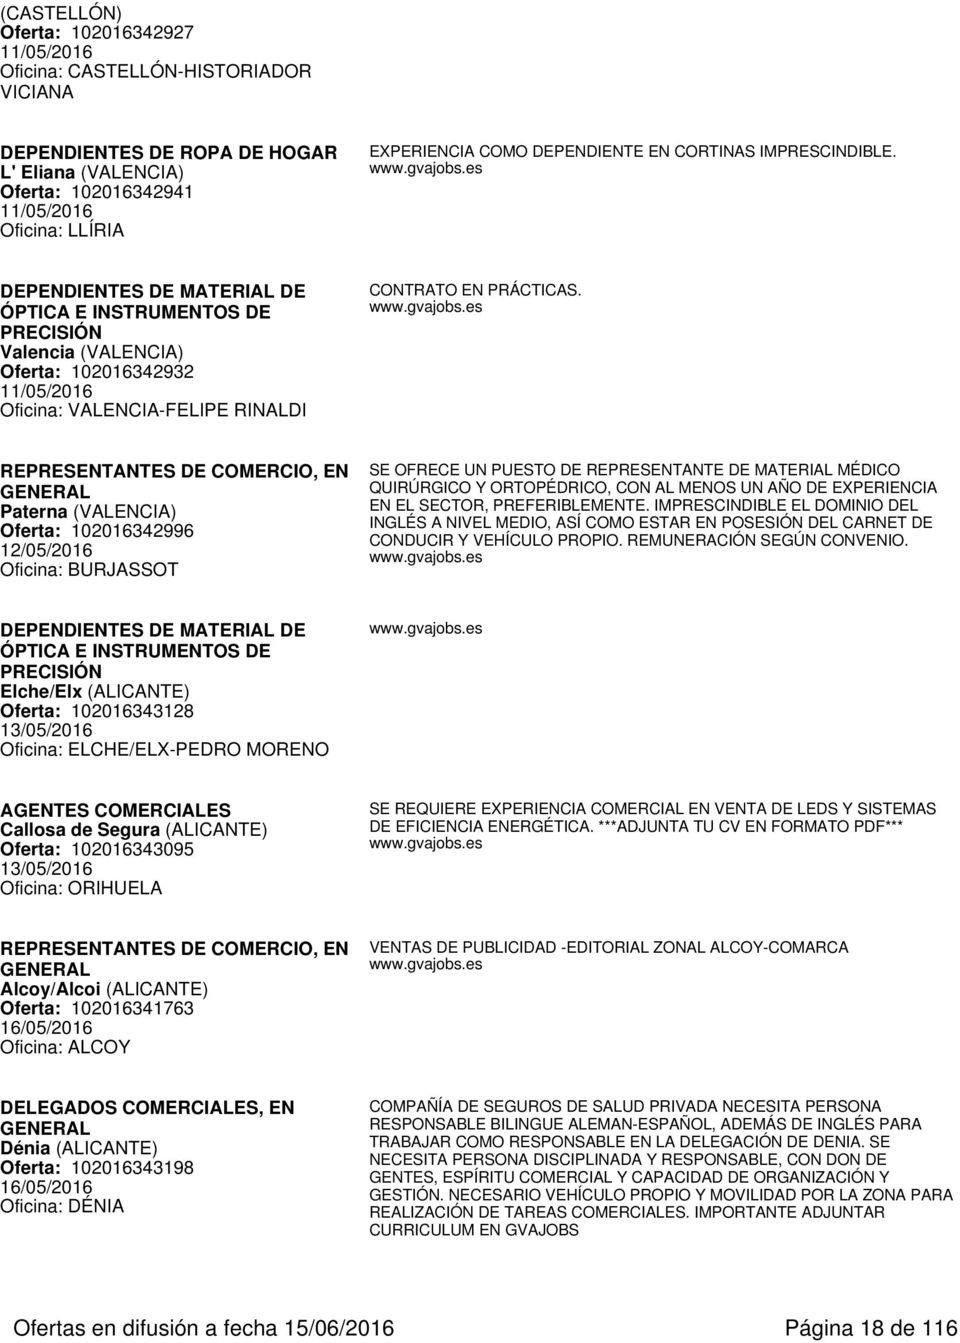 REPRESENTANTES DE COMERCIO, EN Paterna (VALENCIA) Oferta: 102016342996 12/05/2016 Oficina: BURJASSOT SE OFRECE UN PUESTO DE REPRESENTANTE DE MATERIAL MÉDICO QUIRÚRGICO Y ORTOPÉDRICO, CON AL MENOS UN